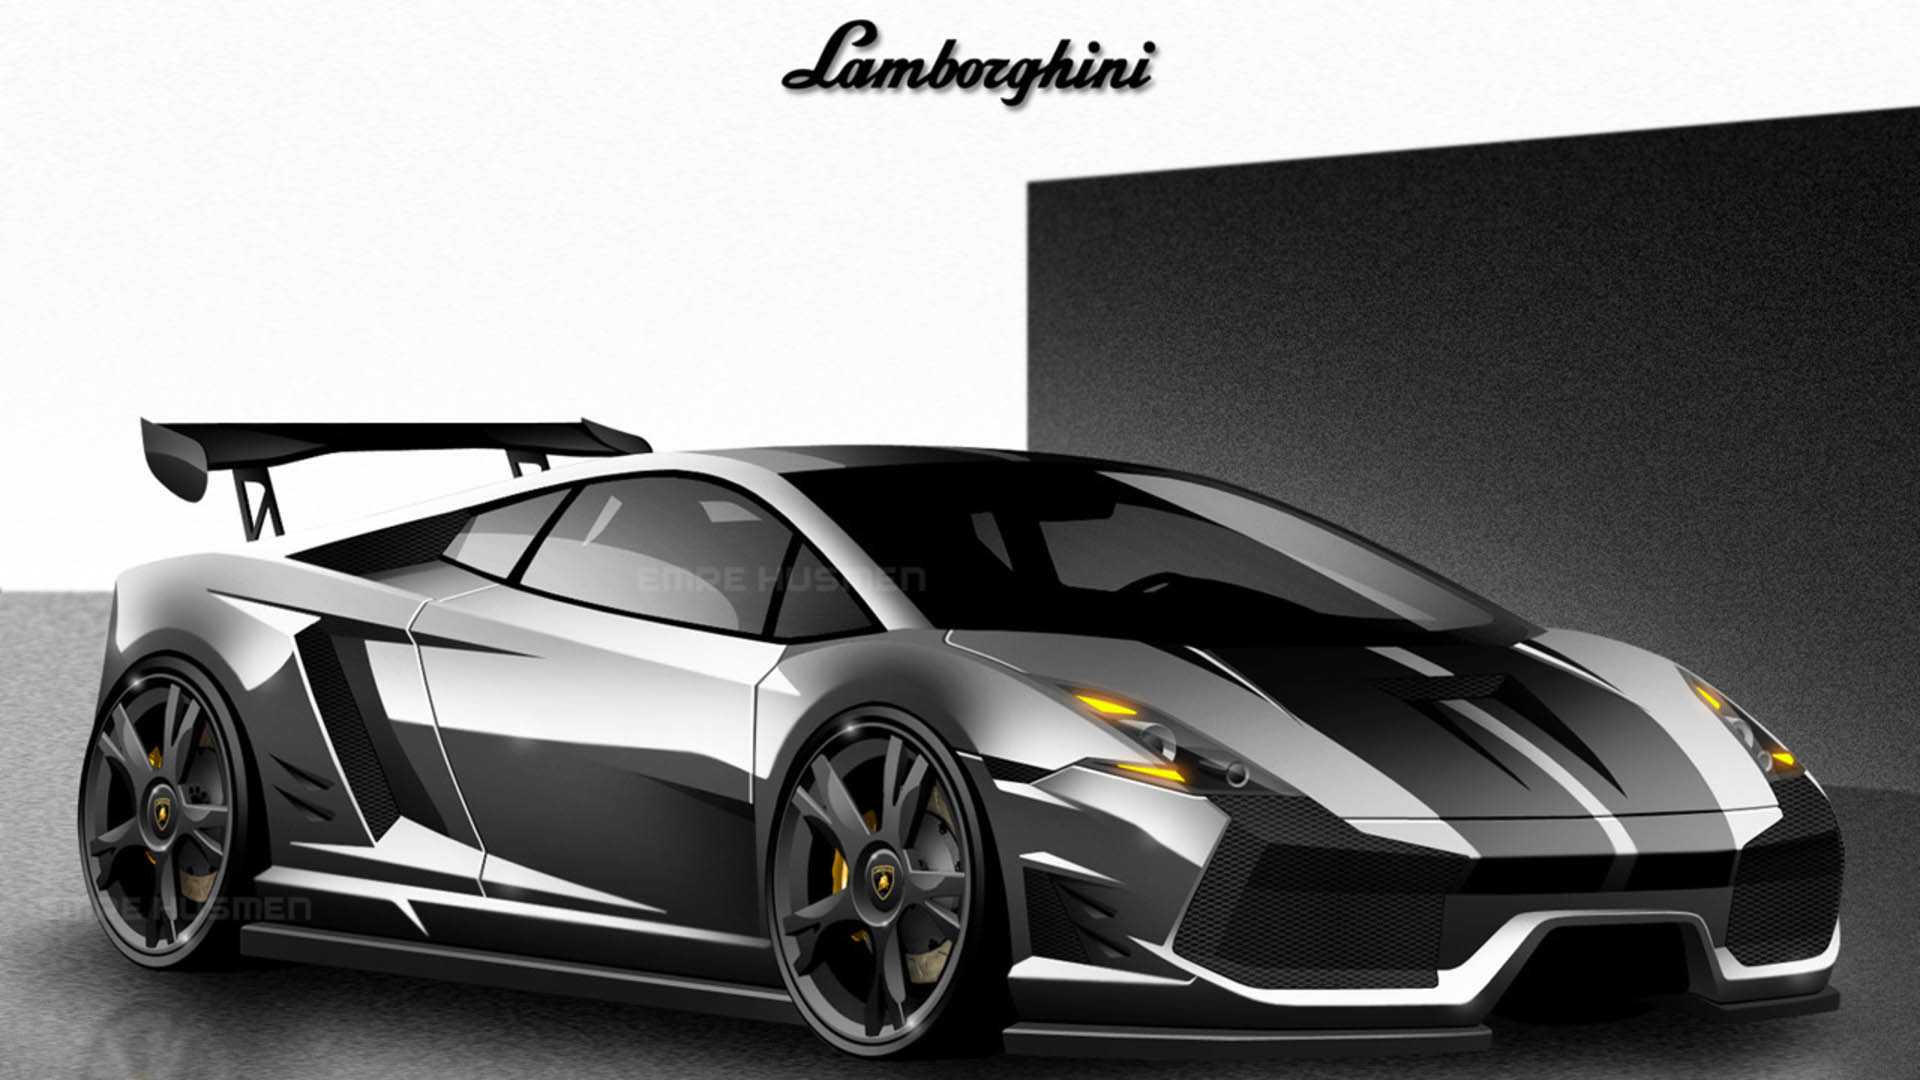 Supreme Lamborghini Wallpapers - Wallpaper Cave